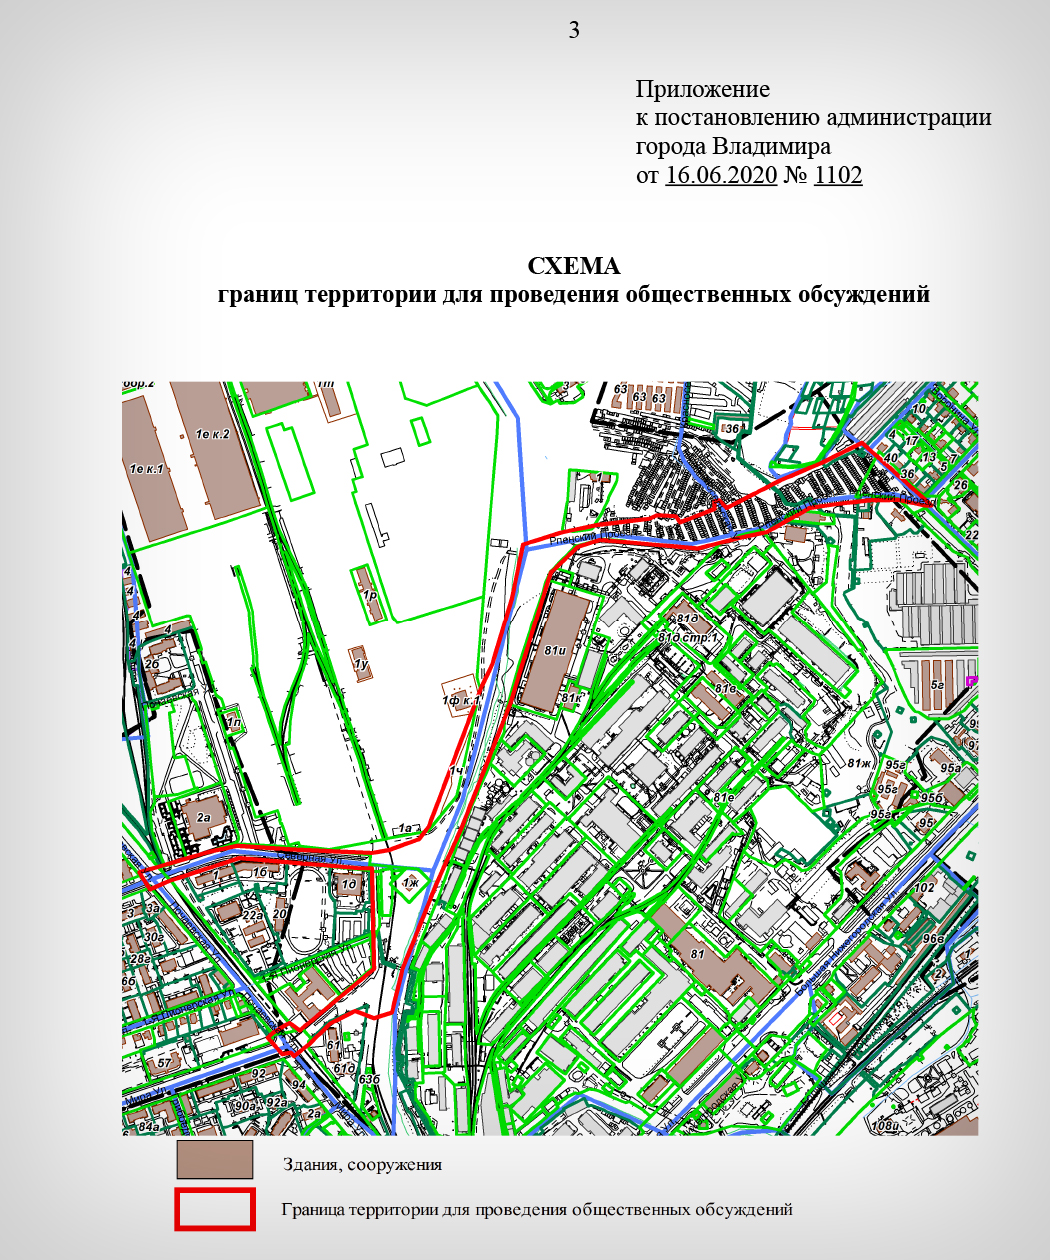 Опубликован проект обновления улицы Соколова-Соколенка. Там предлагают создать зону отдыха с велодорожками